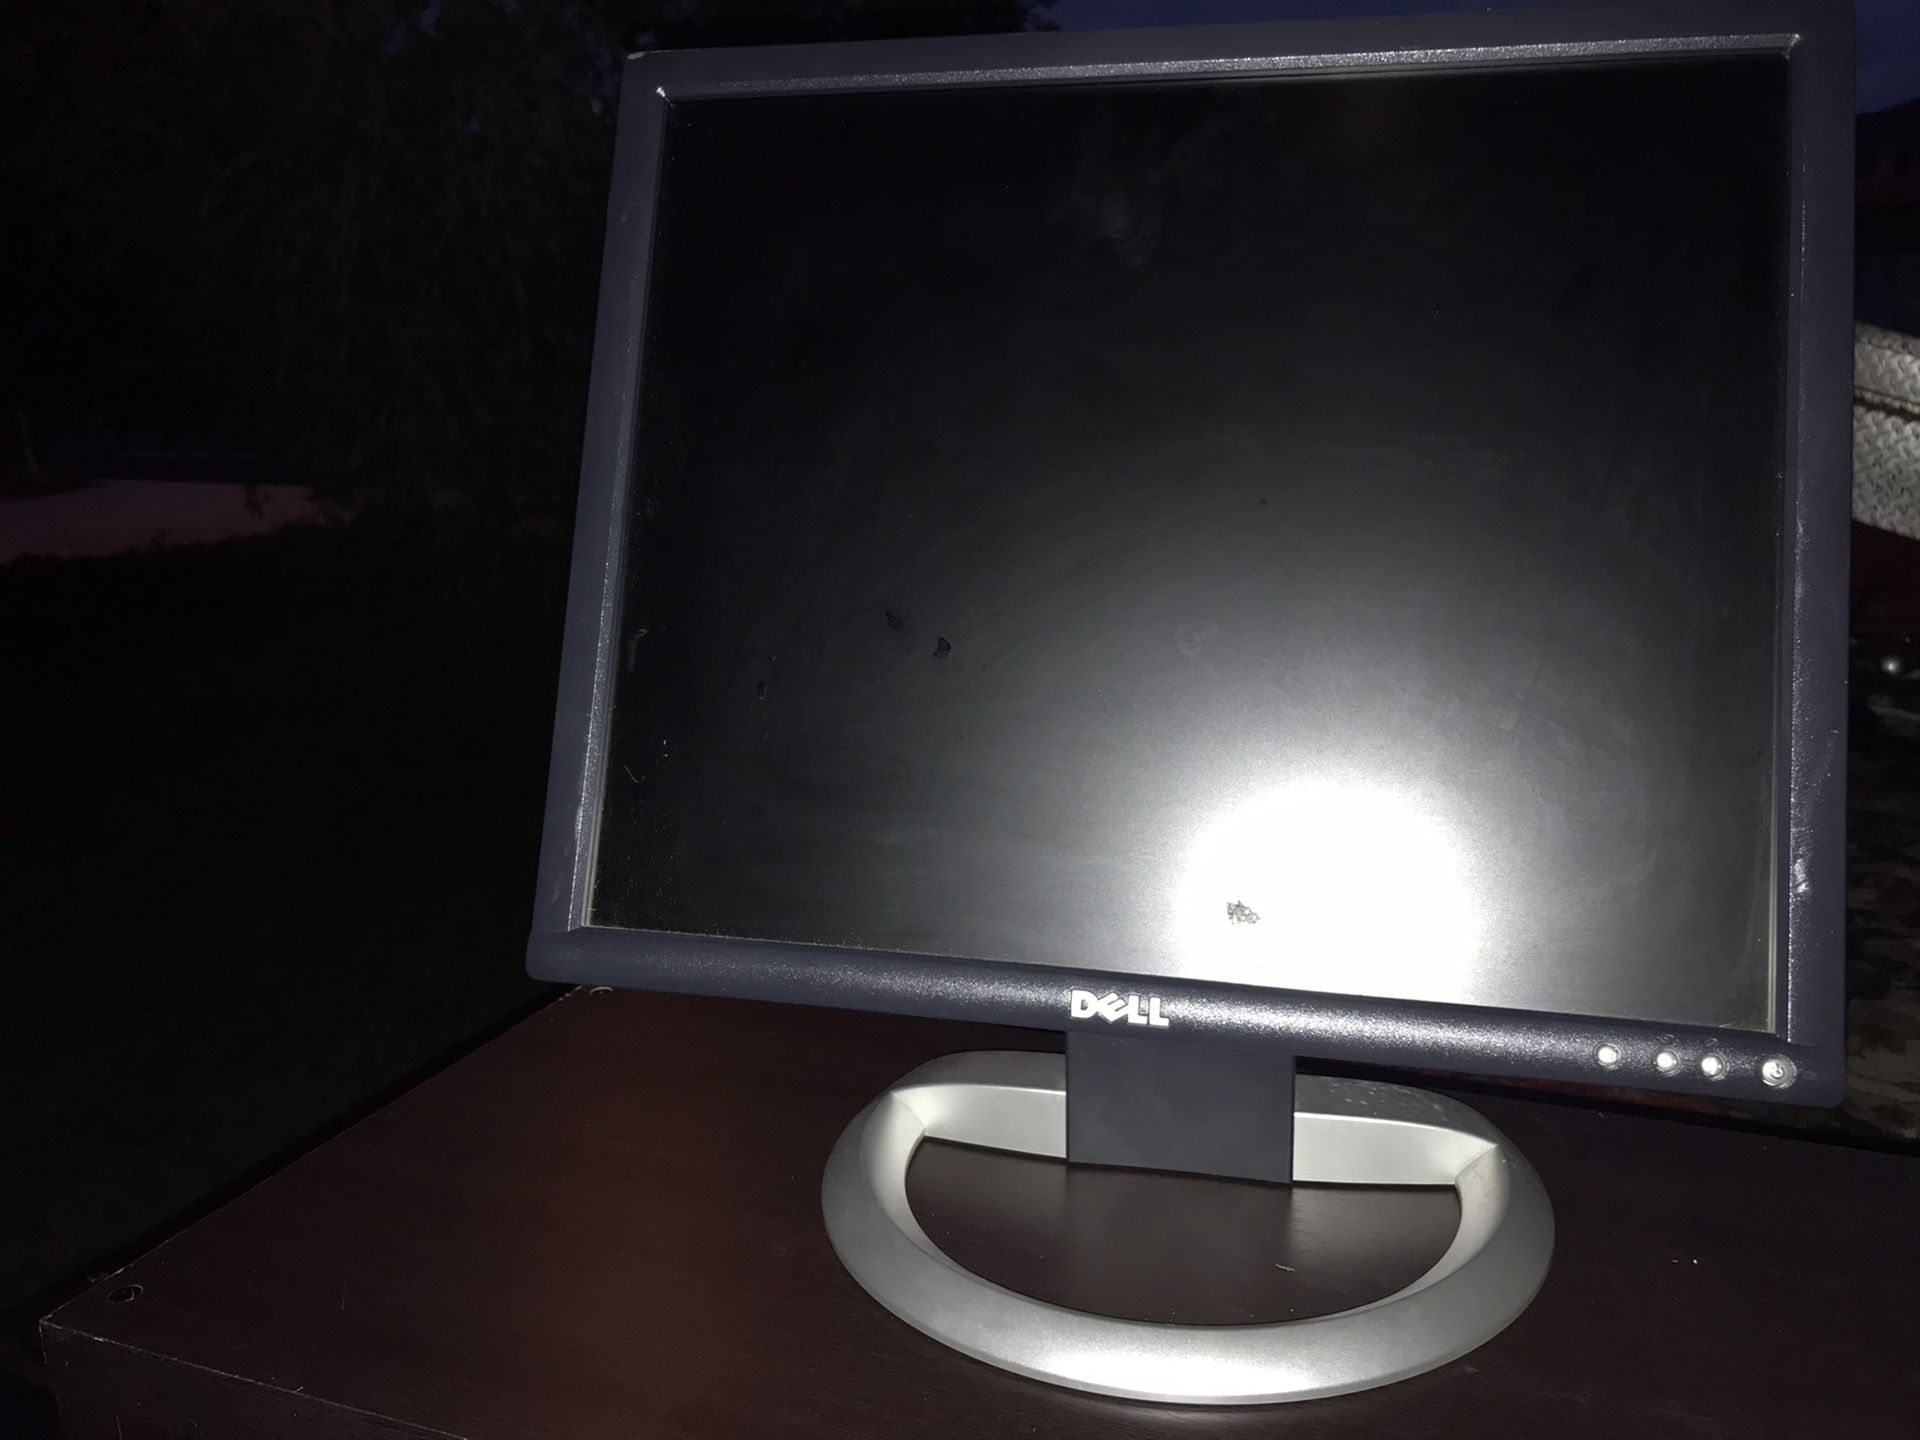 Dell computer monitor screen